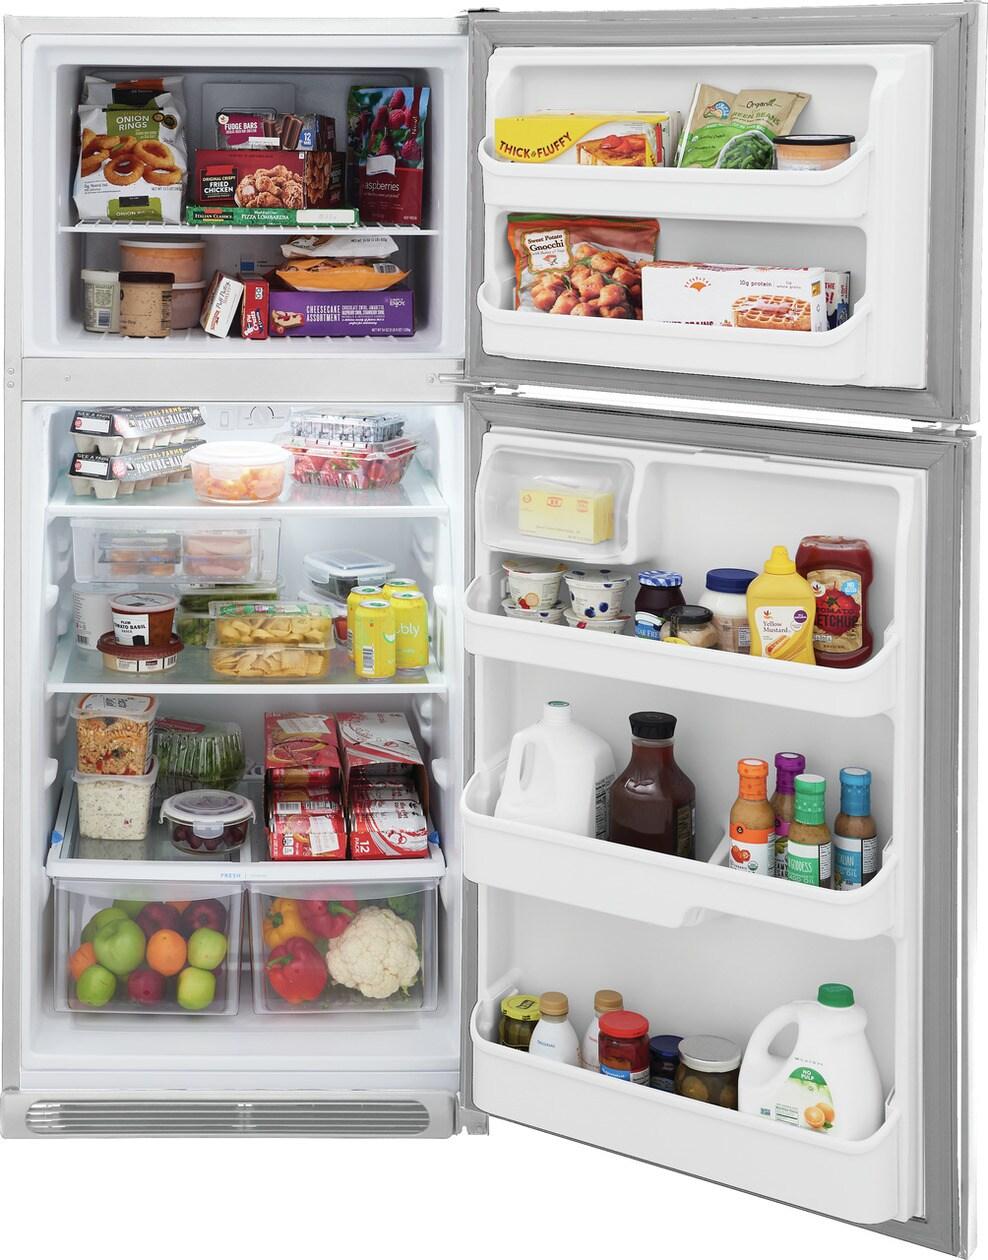 Frigidaire FRTD2021AW 20.5 Cu. Ft. Top Freezer Refrigerator